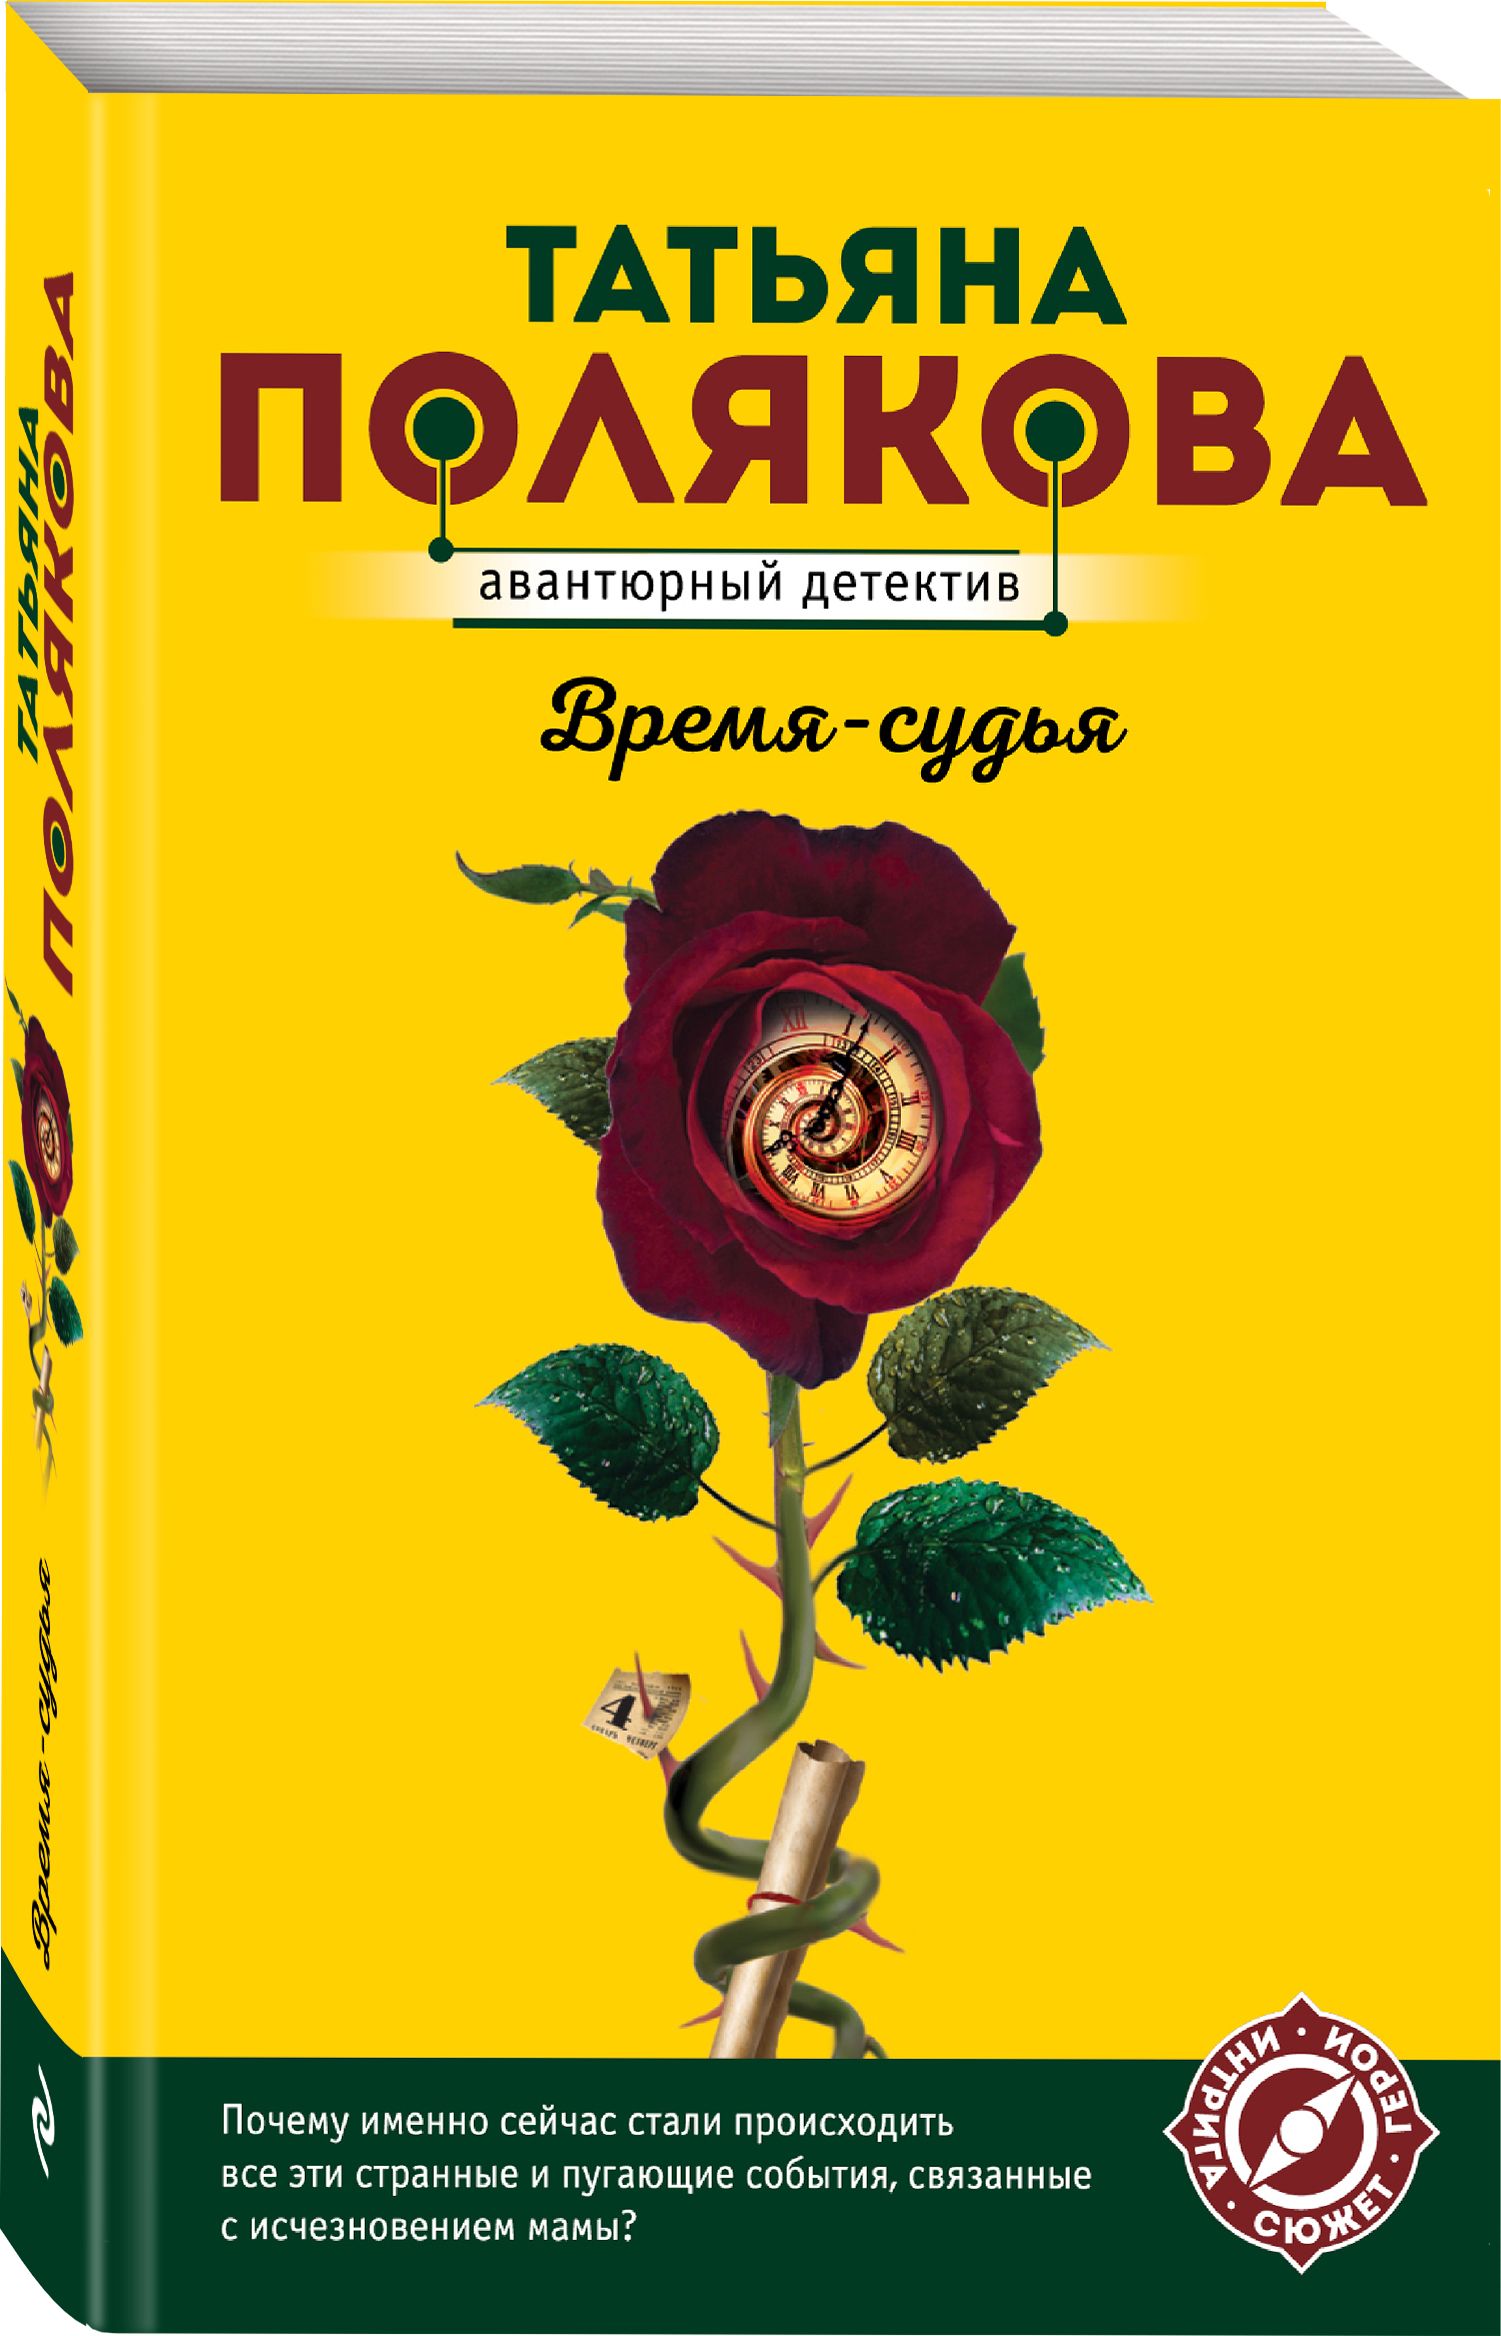 Купить книгу поляковой